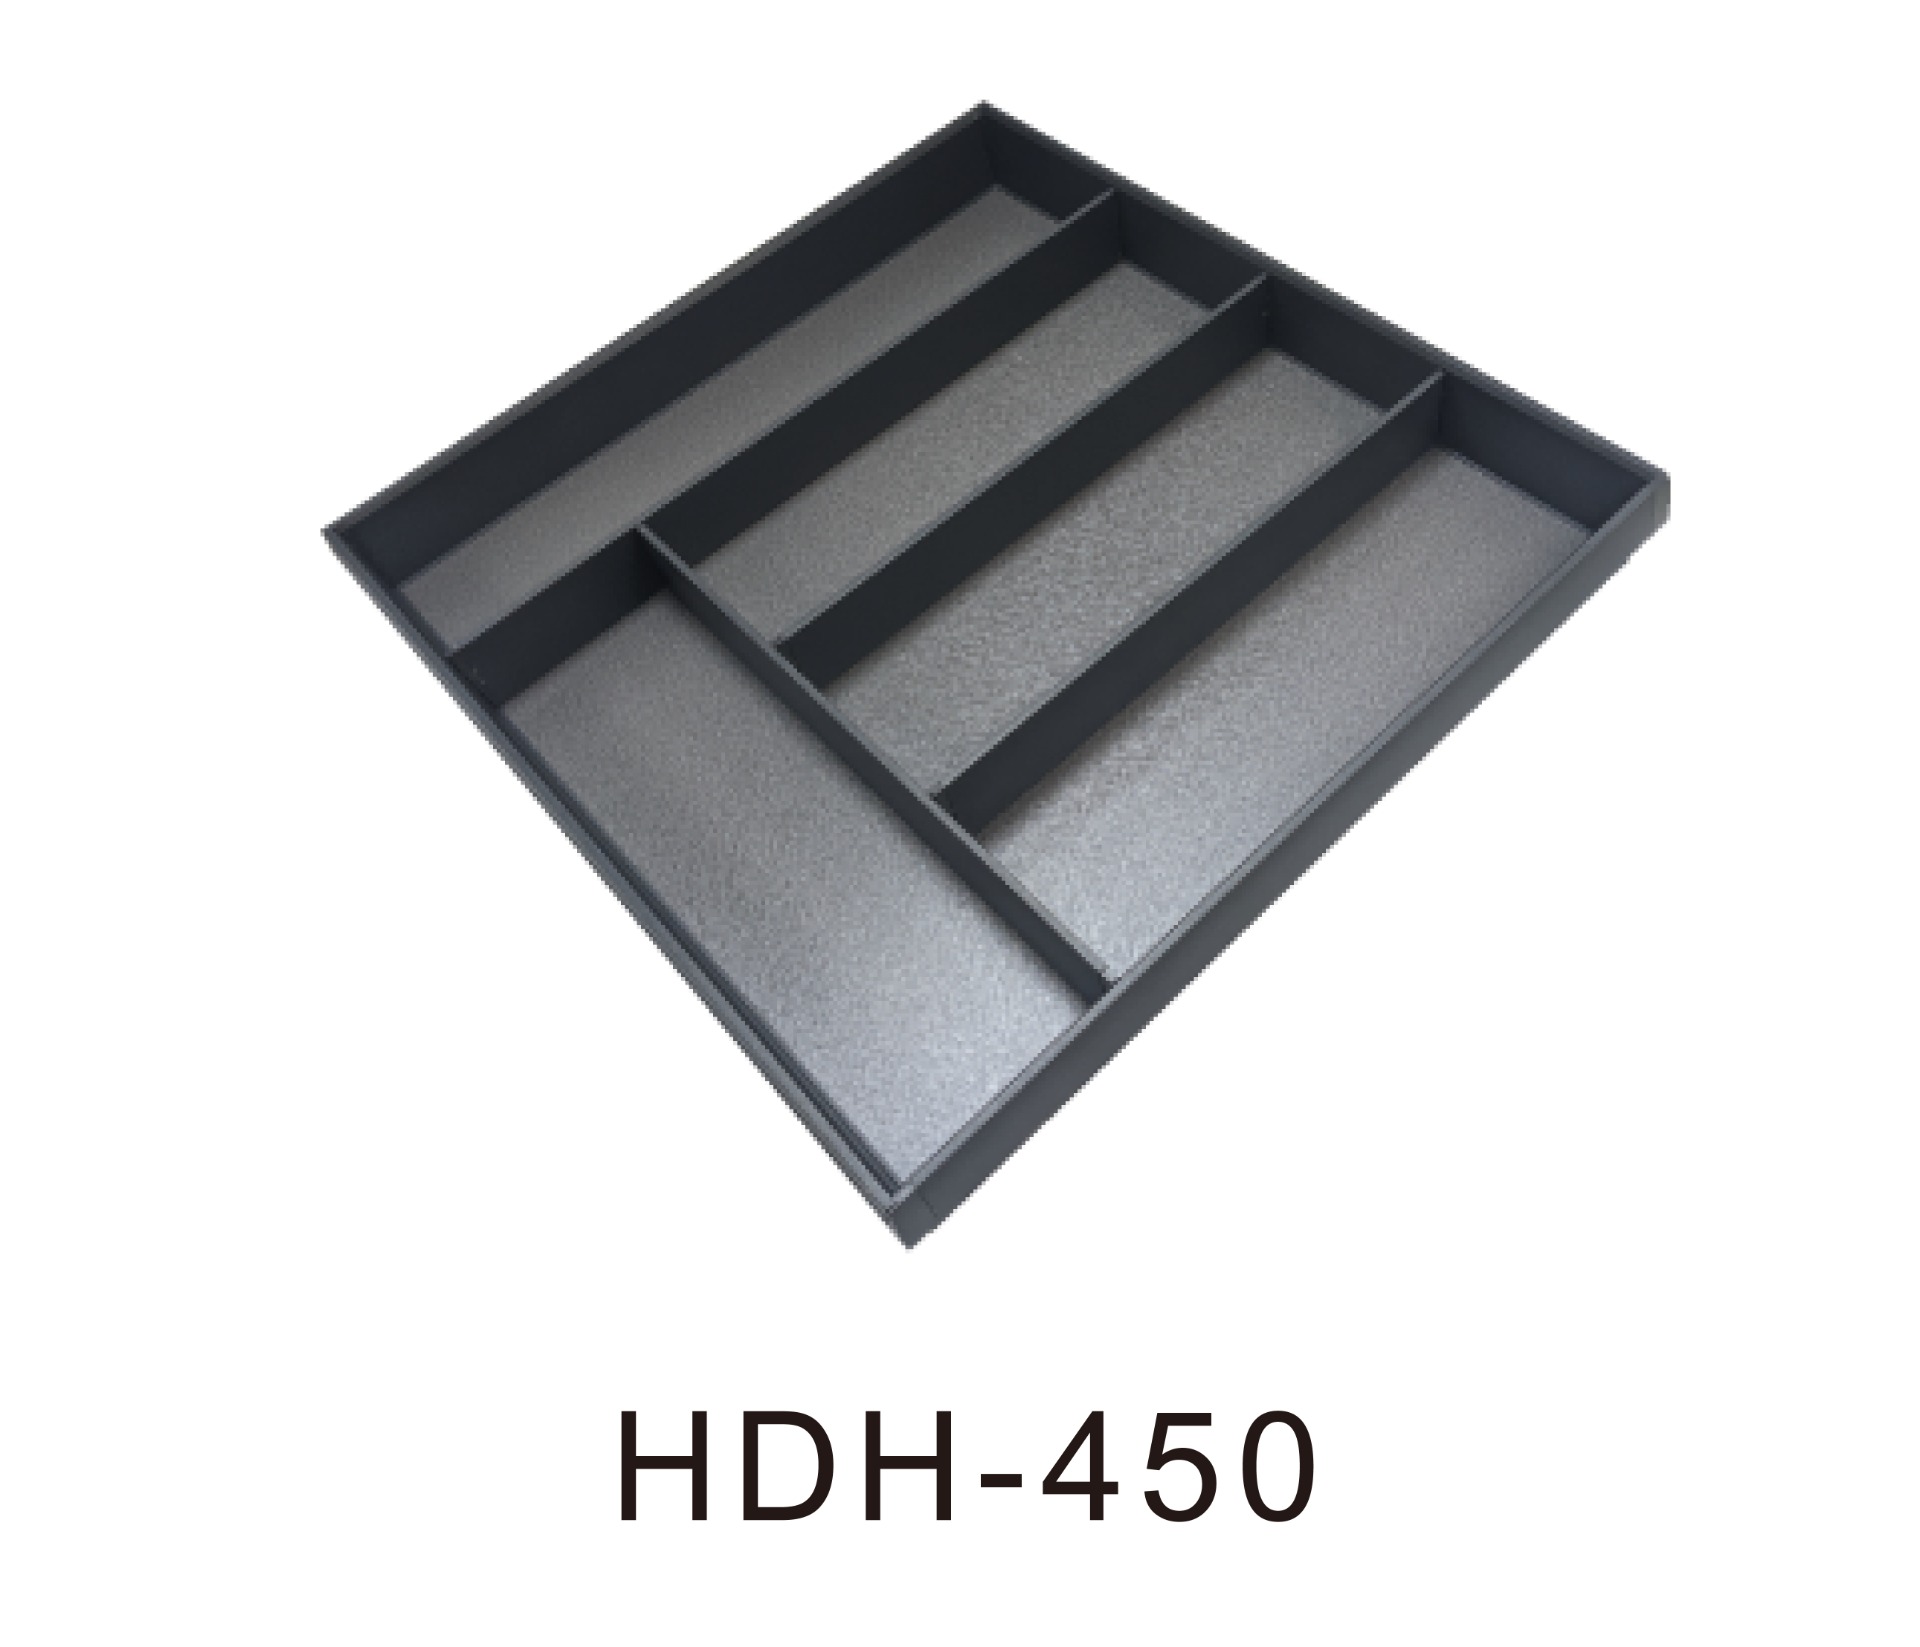 HDH-450